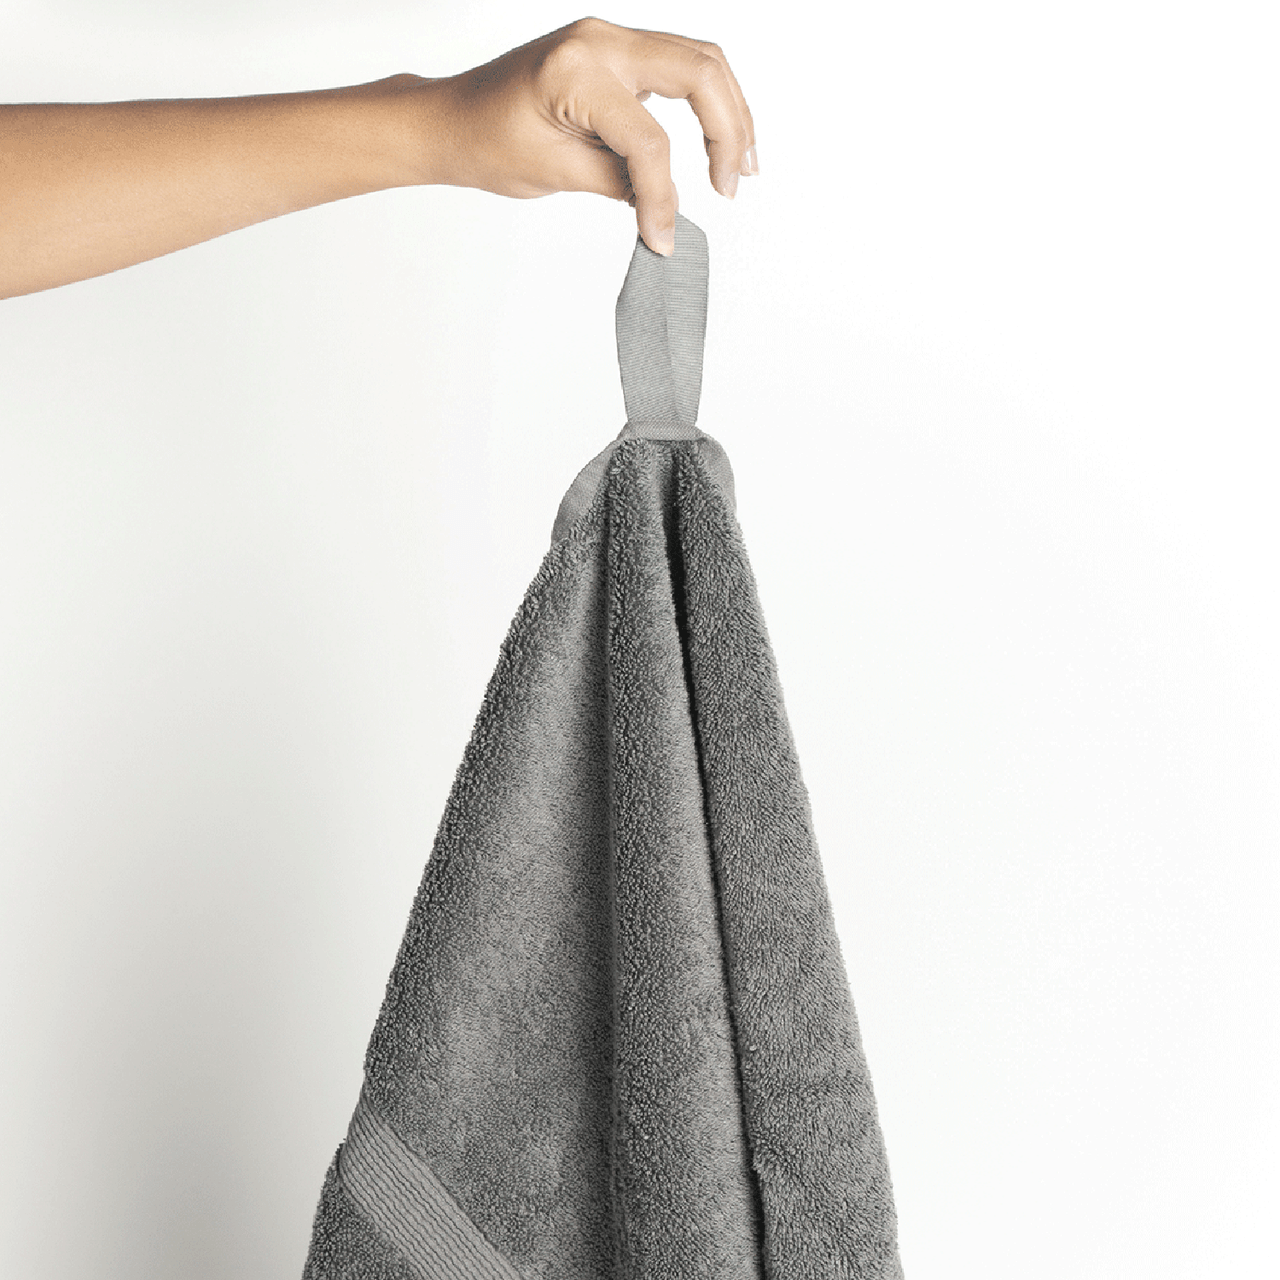 Nestwell™ Hygro Solid Bath Towel in Chrome Grey, Bath Towel - Fred